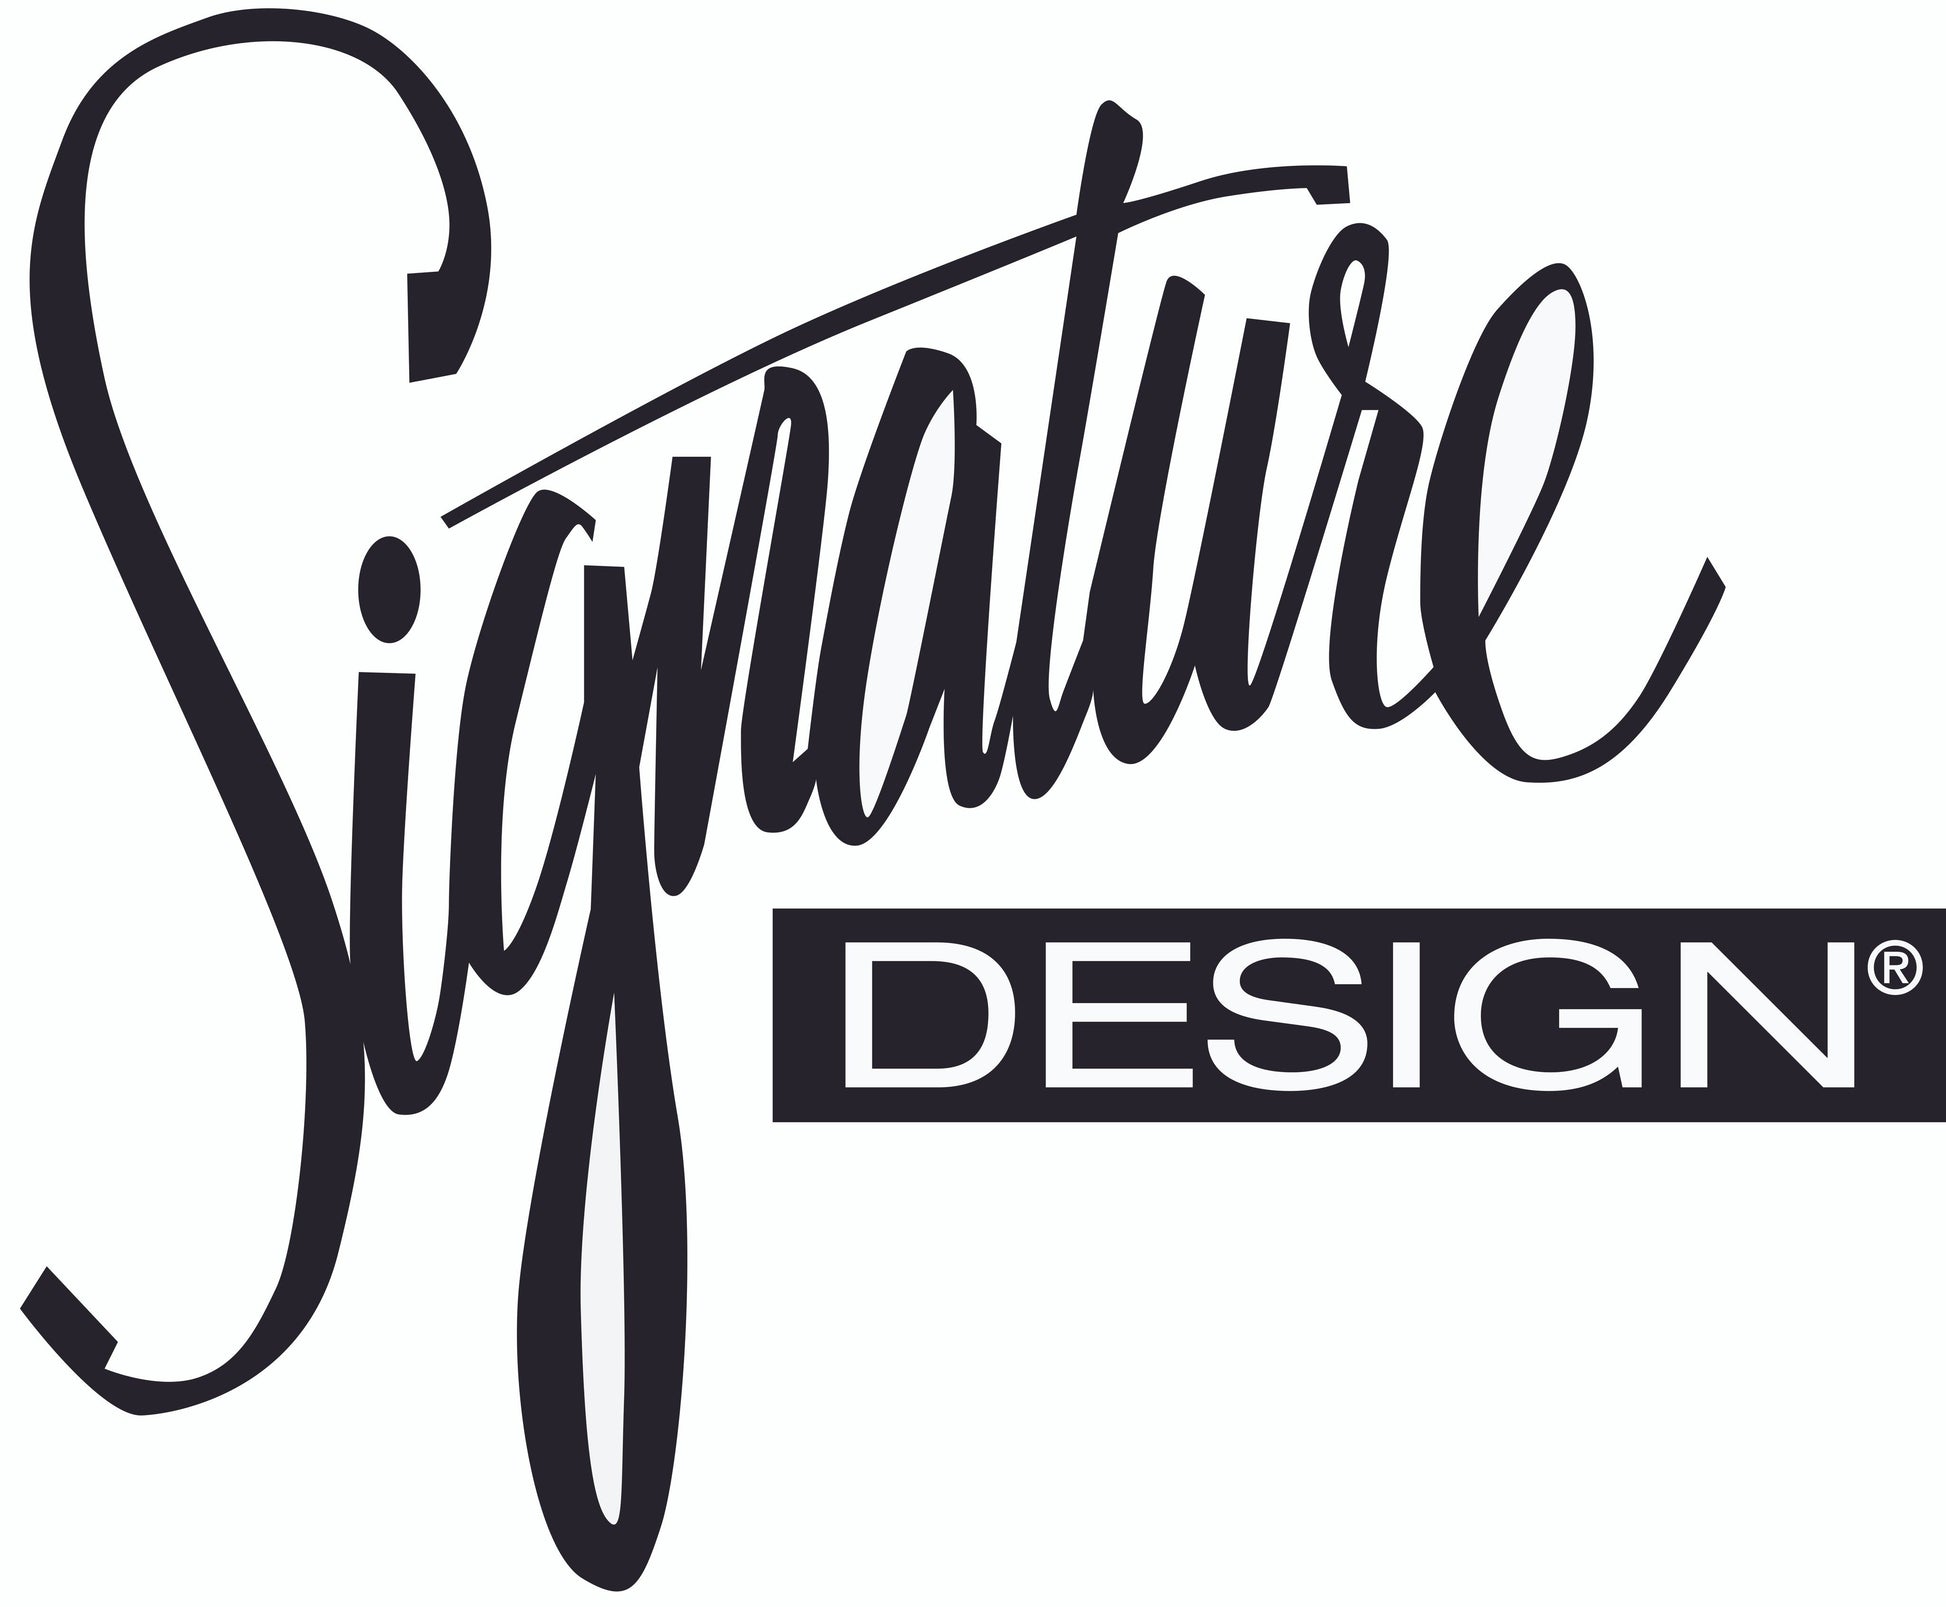 Cashton Loveseat Signature Design by Ashley®